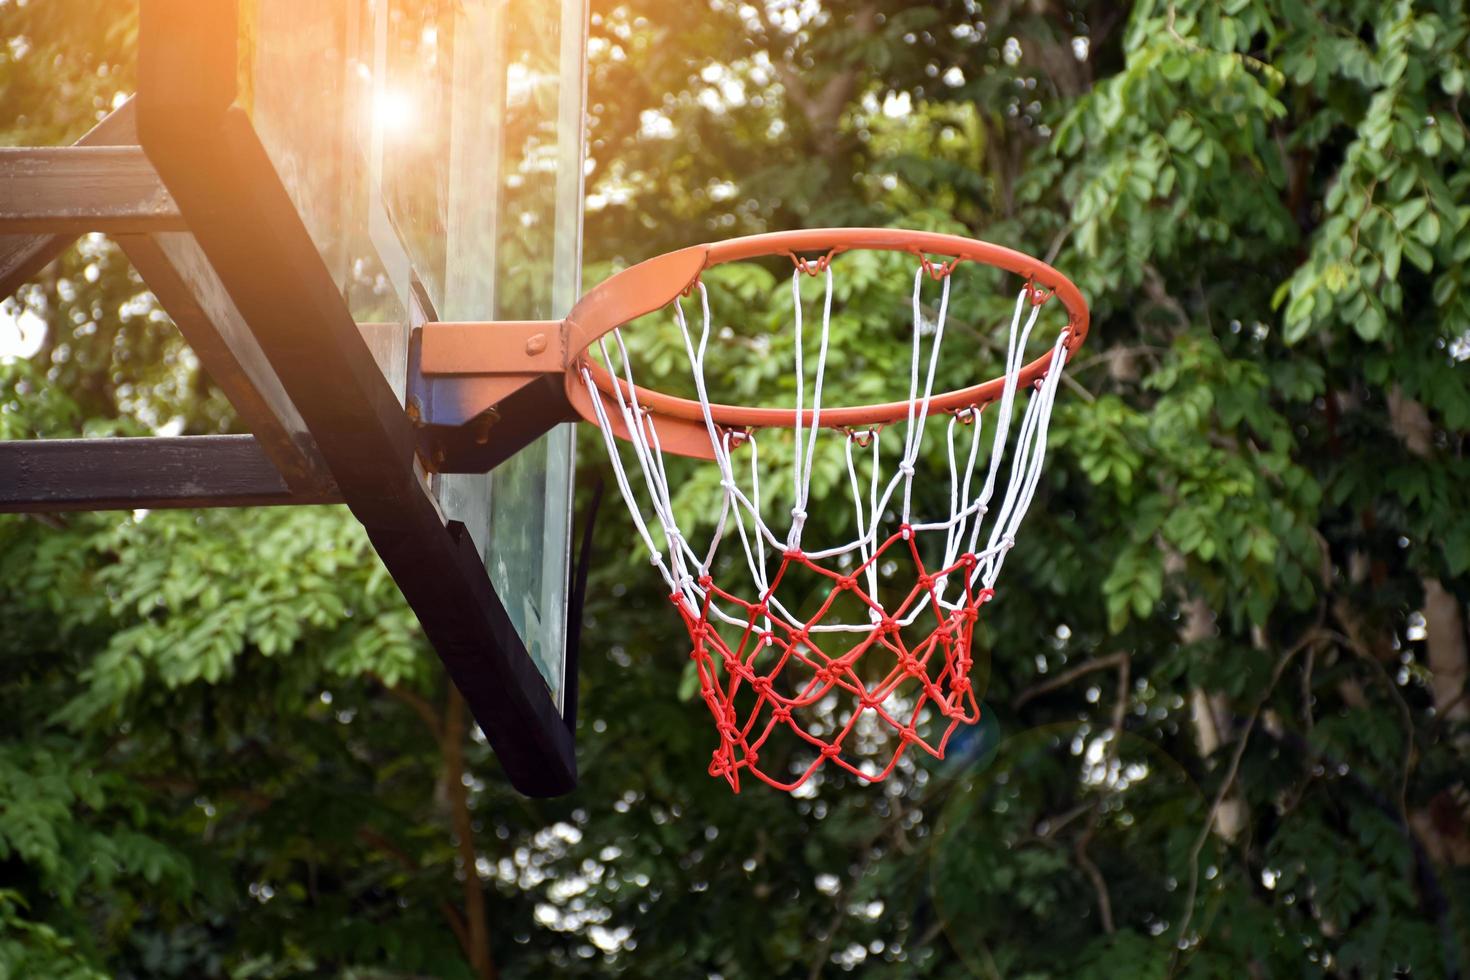 basketboll ring på utomhus- skytte mål, suddig och solljus redigerad bakgrund. mjuk och selektiv fokus på basketboll ring. foto